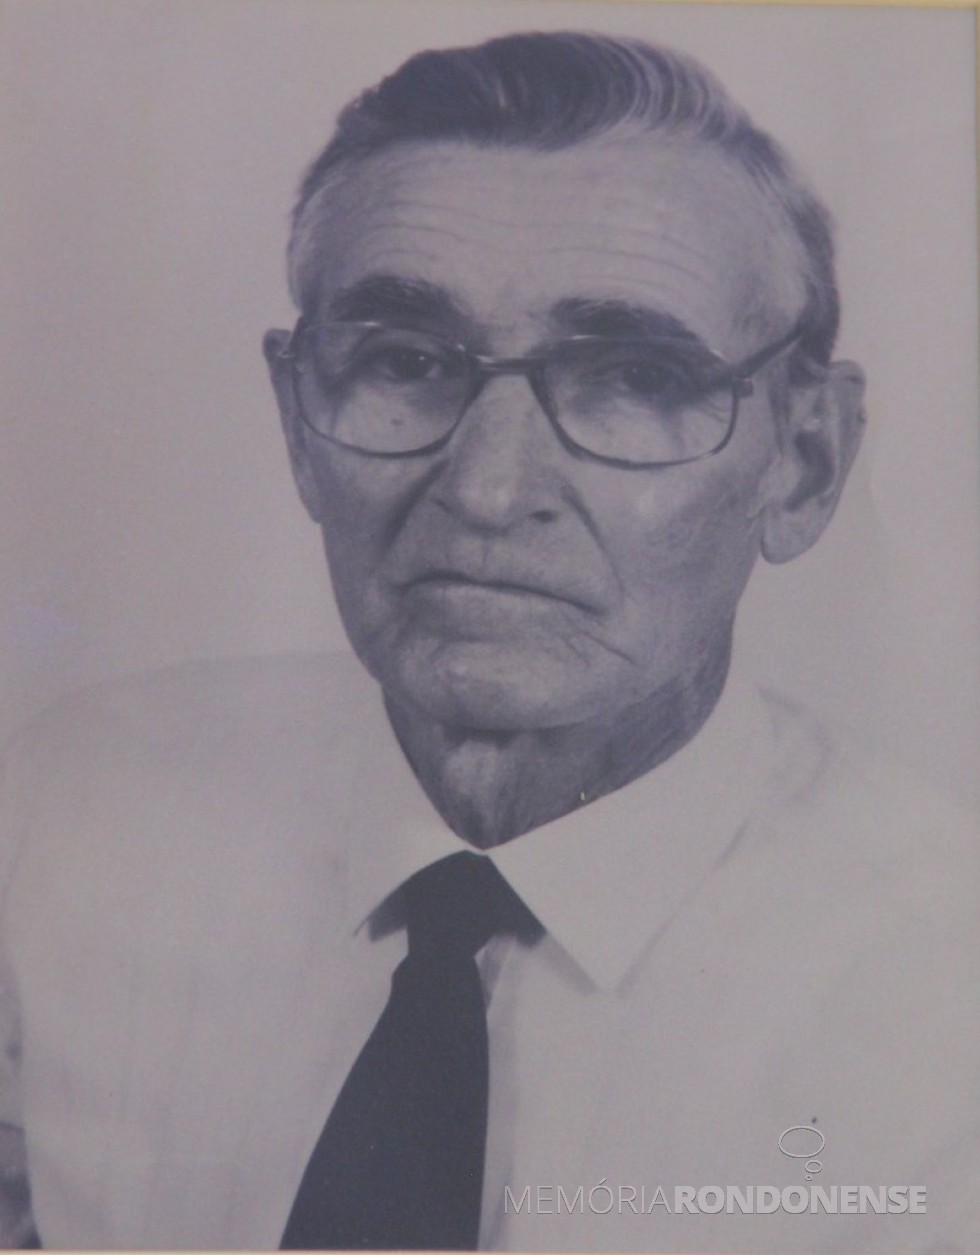 José Hermeto Kuhn, pioneiro e ex-vereador de Toledo (PR), nascido em maio de 1928.
Imagem: Acervo Câmara Municipal de Toledo - FOTO 3  - 